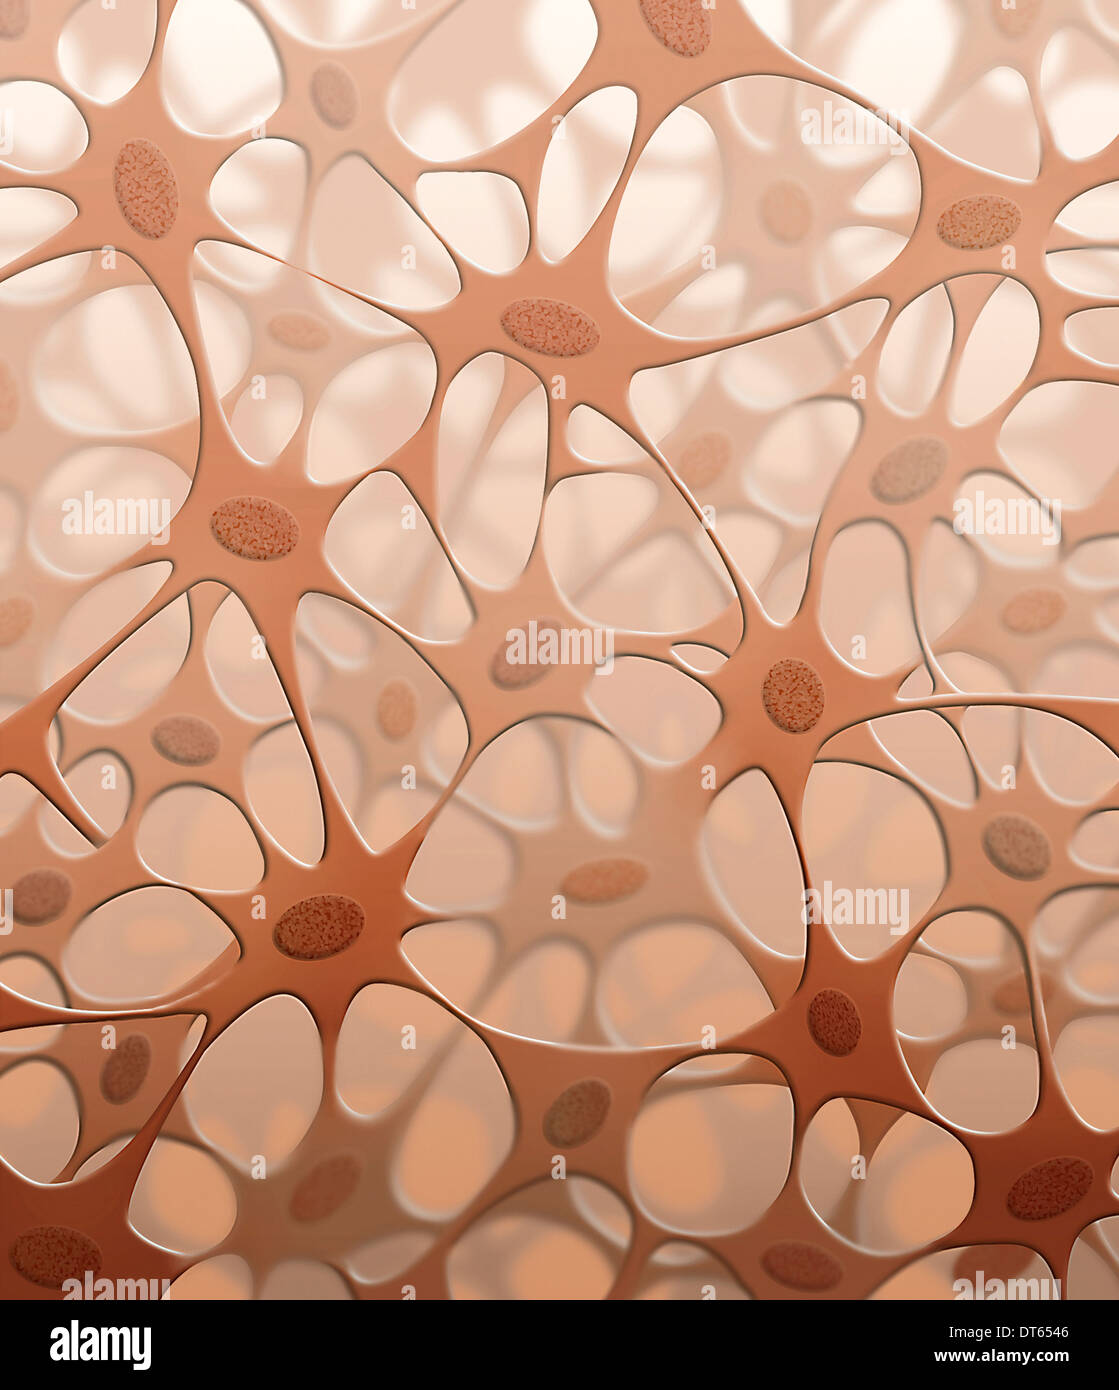 Detaillierte Darstellung des Bindegewebes, Querschnitt, zeigt Zellen und Fasern, alle eingebettet in den Körperflüssigkeiten. Stockfoto